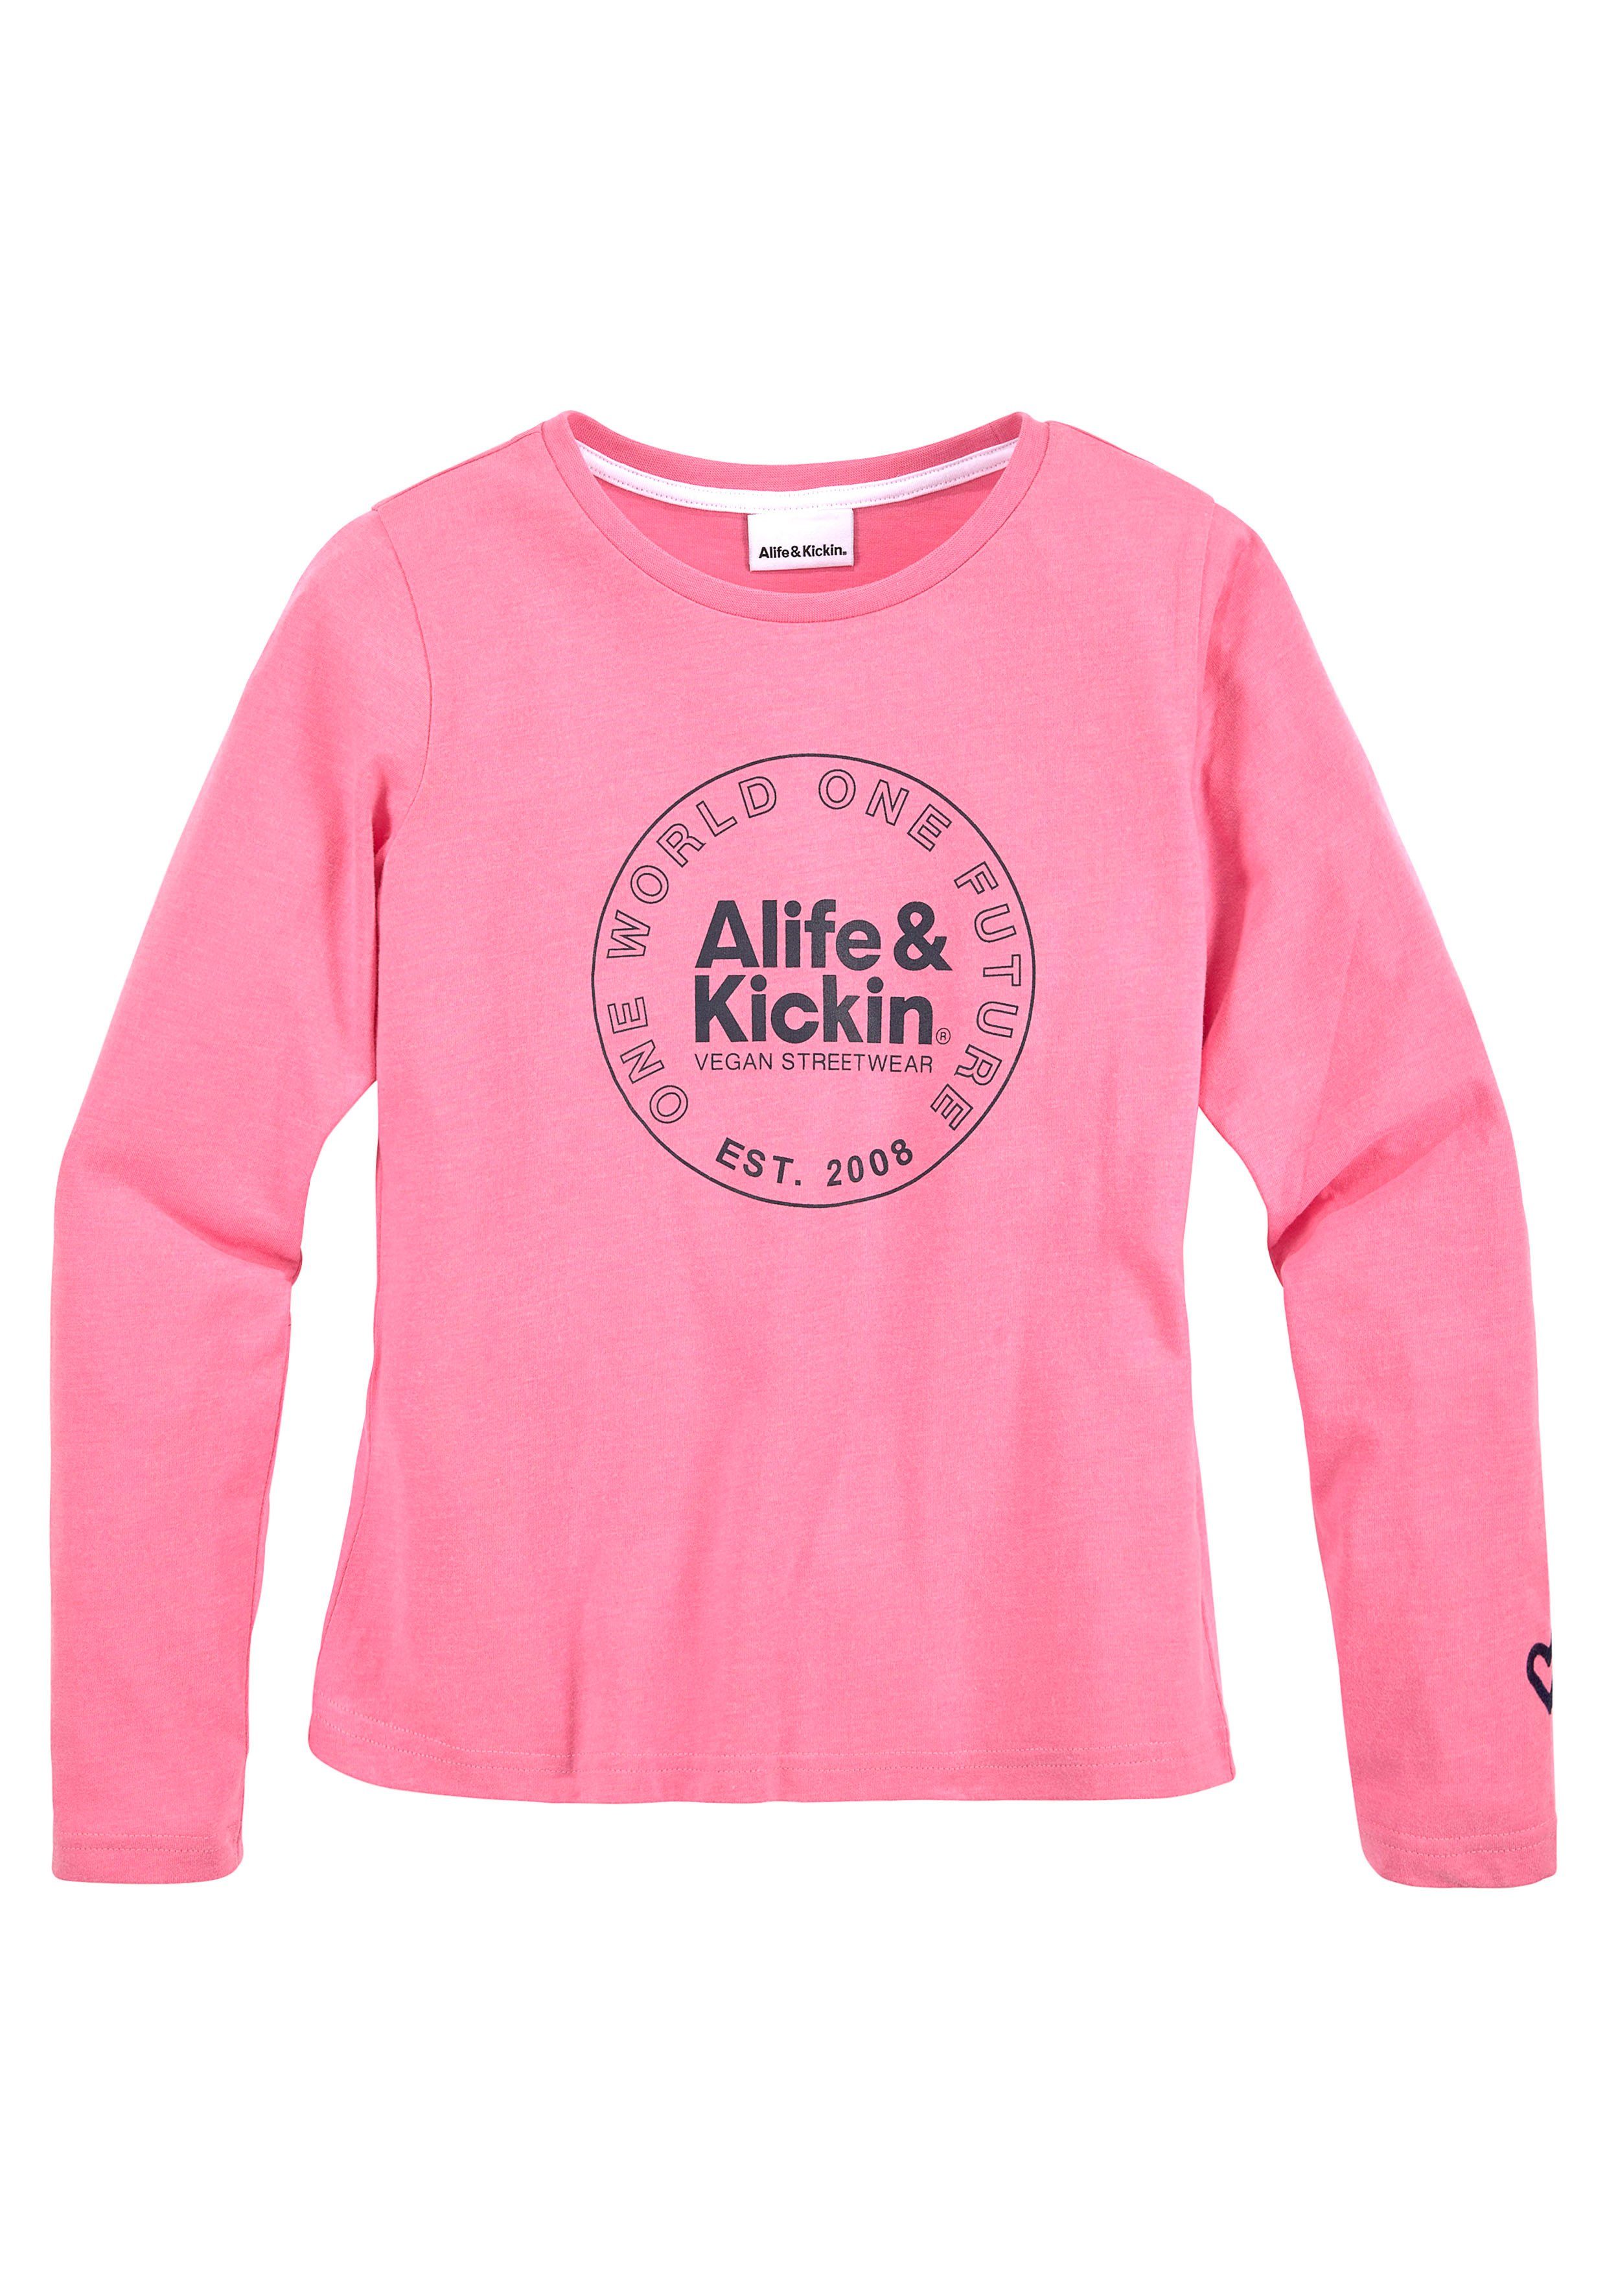 Kickin Kickin Langarmshirt & Alife NEUE Druck MARKE! Kids. & Logo für mit Alife